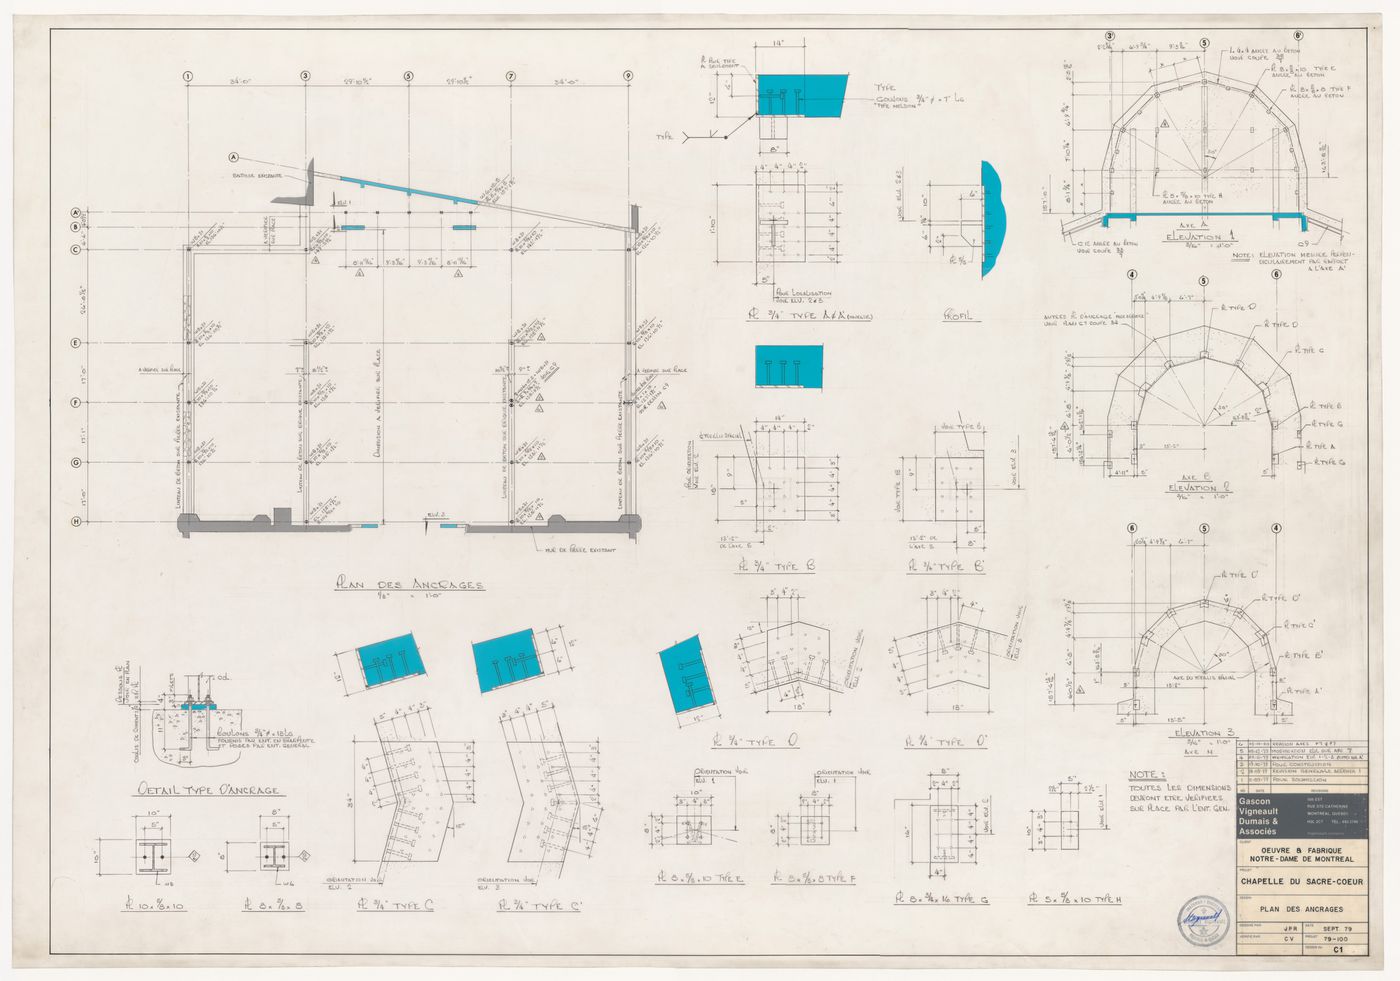 Plans and elevations for anchoring for the reconstruction of the Chapelle du Sacré-Coeur, Notre-Dame de Montréal